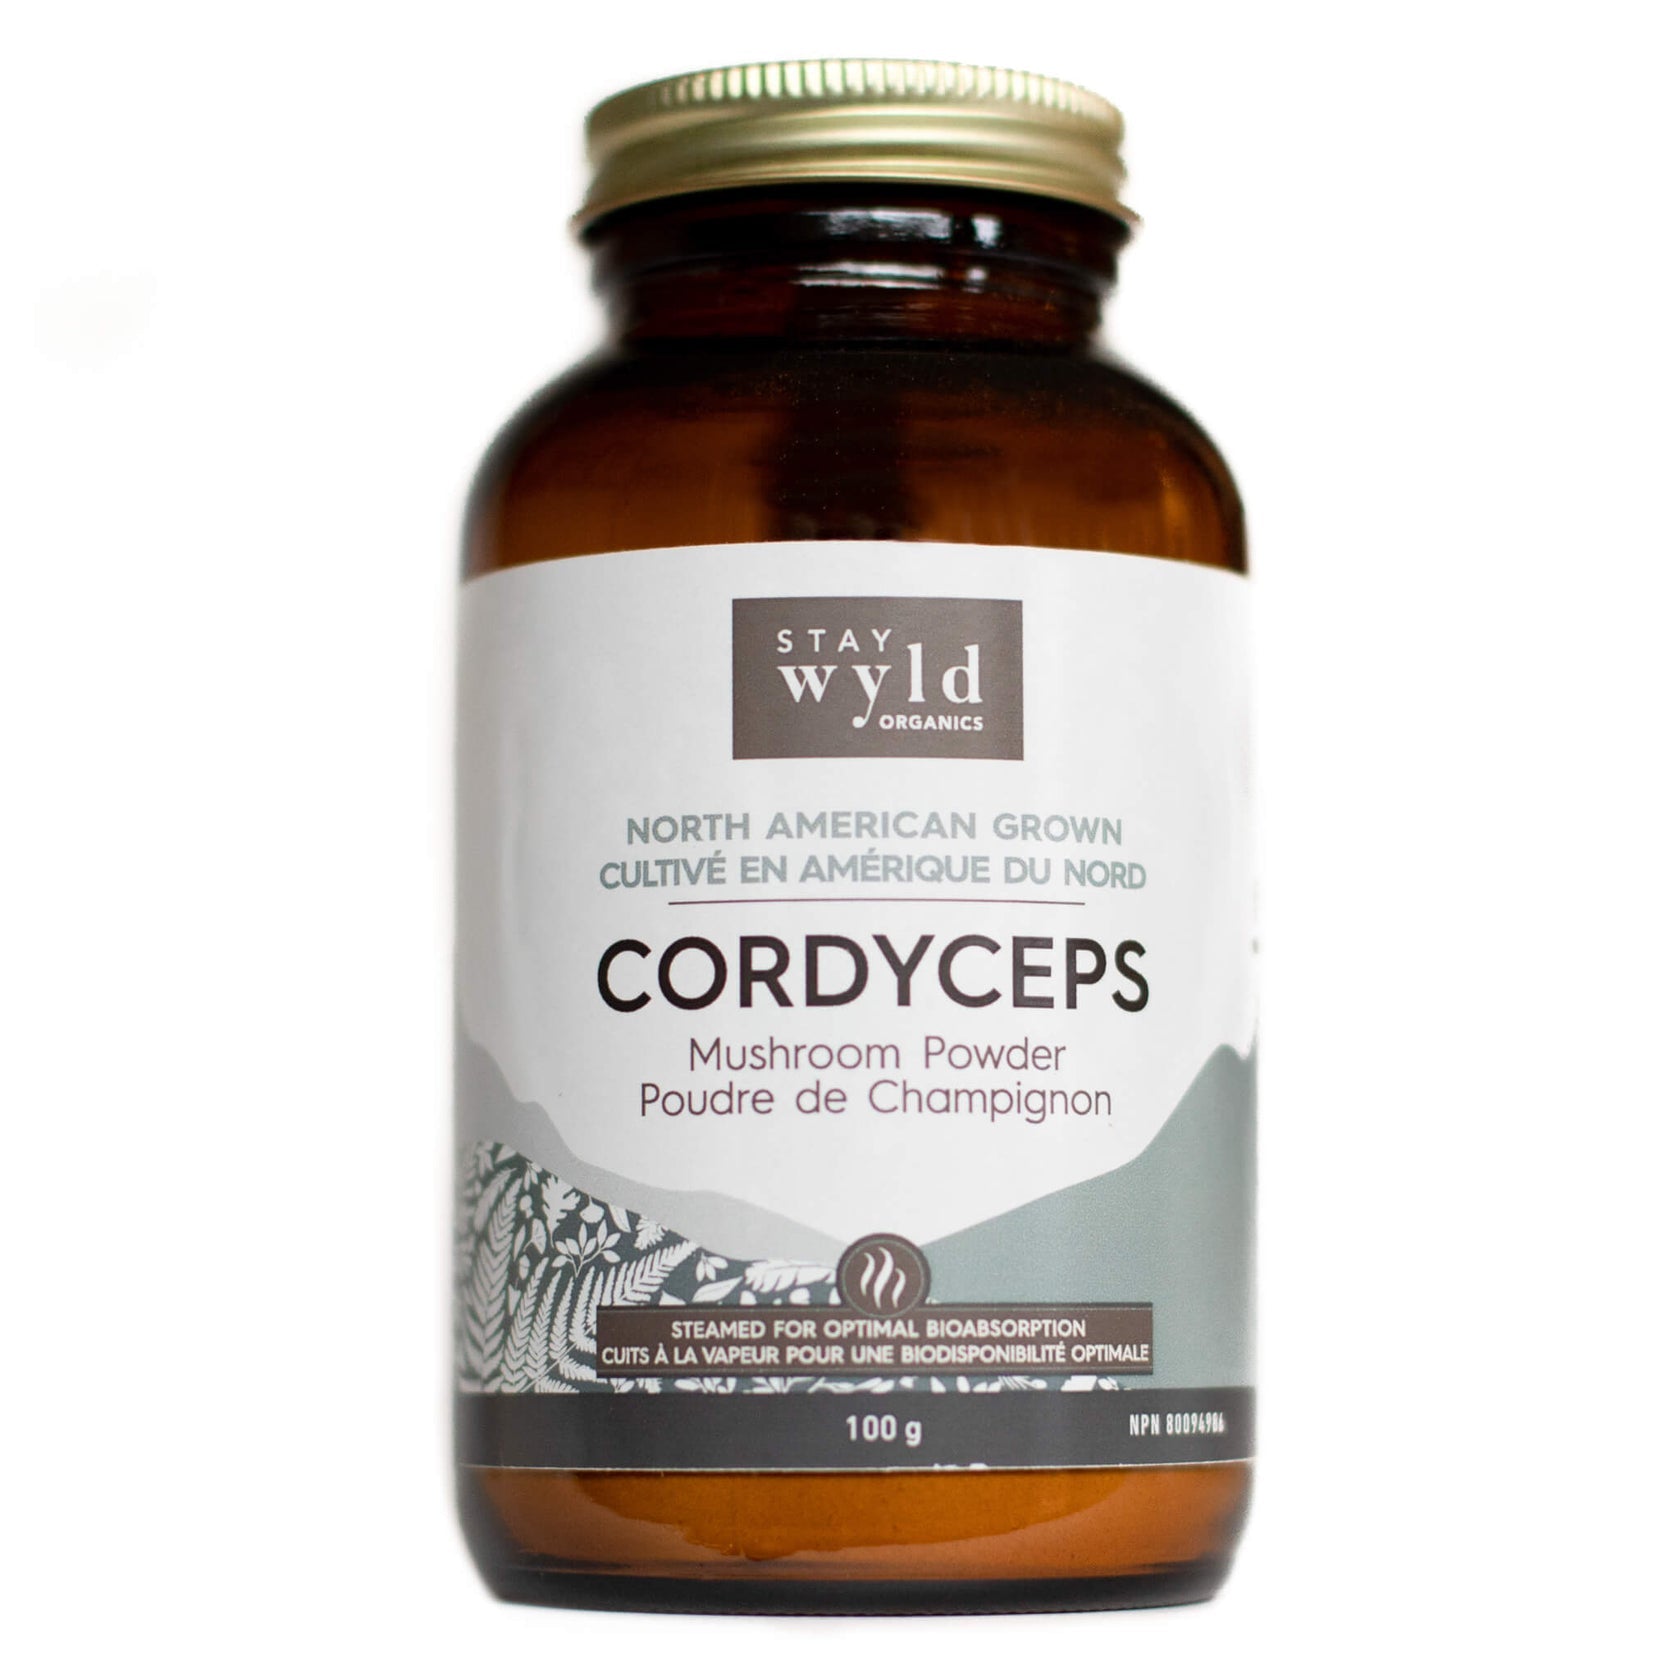 Stay Wyld Organics Cordyceps Mushroom Powder 100g